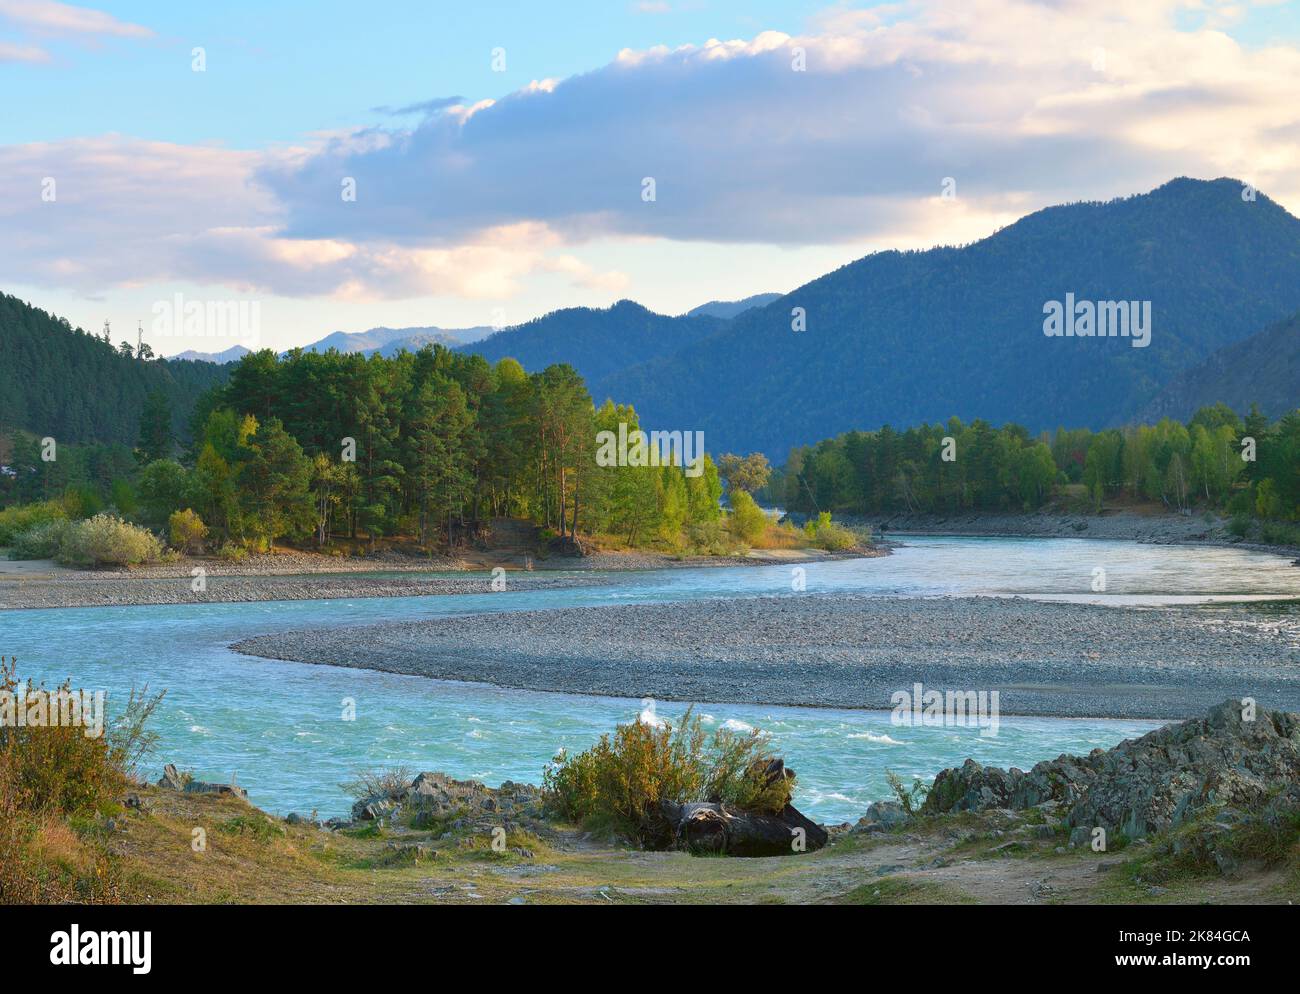 The Katun River in Altai. The rocky shore of a mountain river in autumn. Altai, Siberia, Russia, 2022 Stock Photo